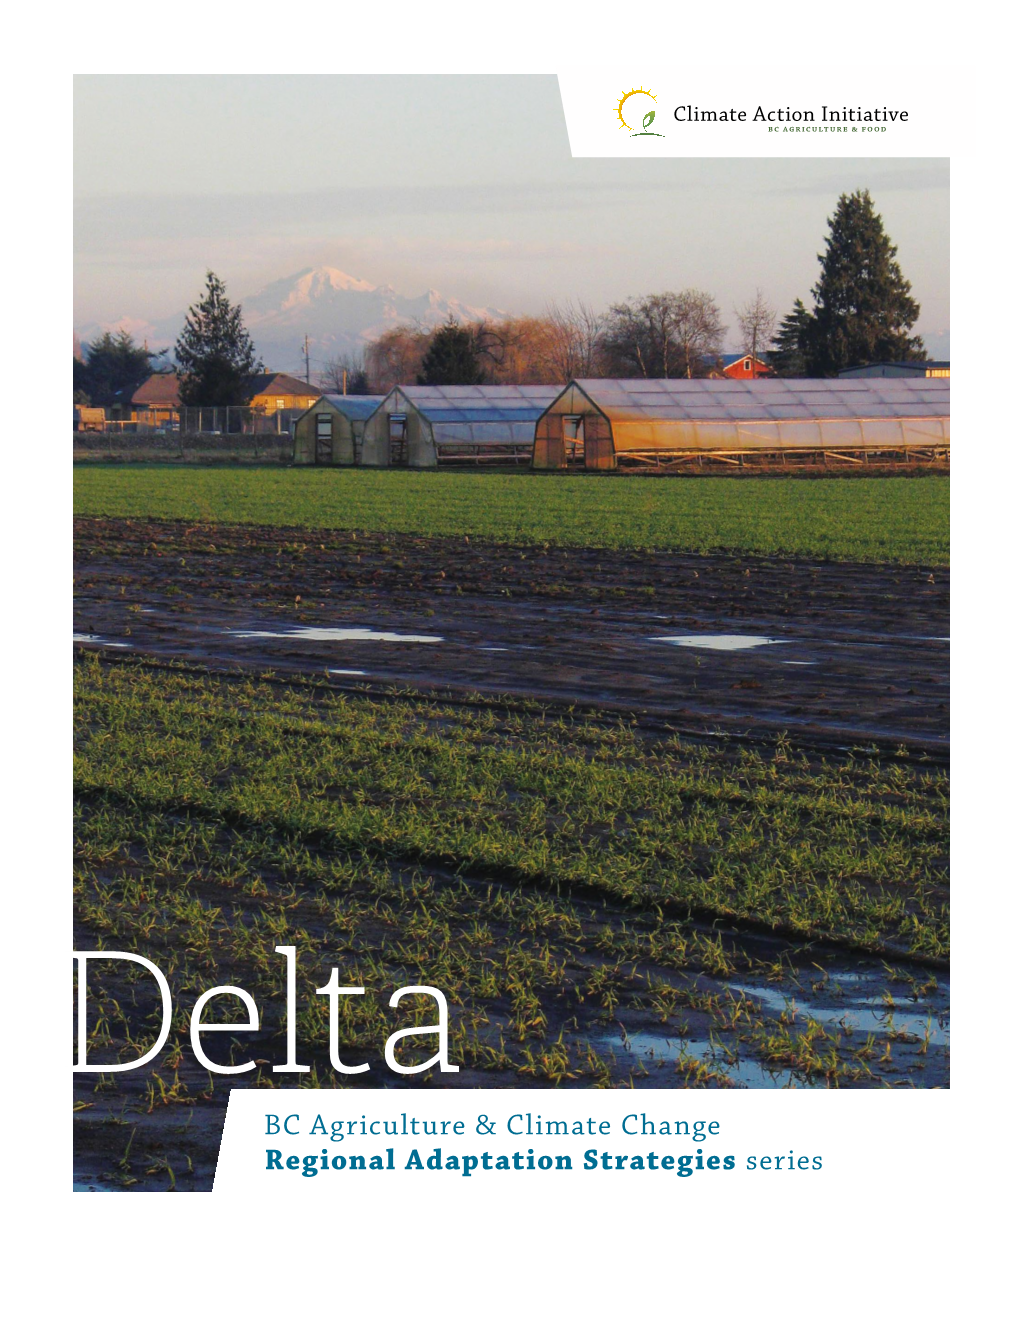 Regional Adaptation Strategies Series -- Delta